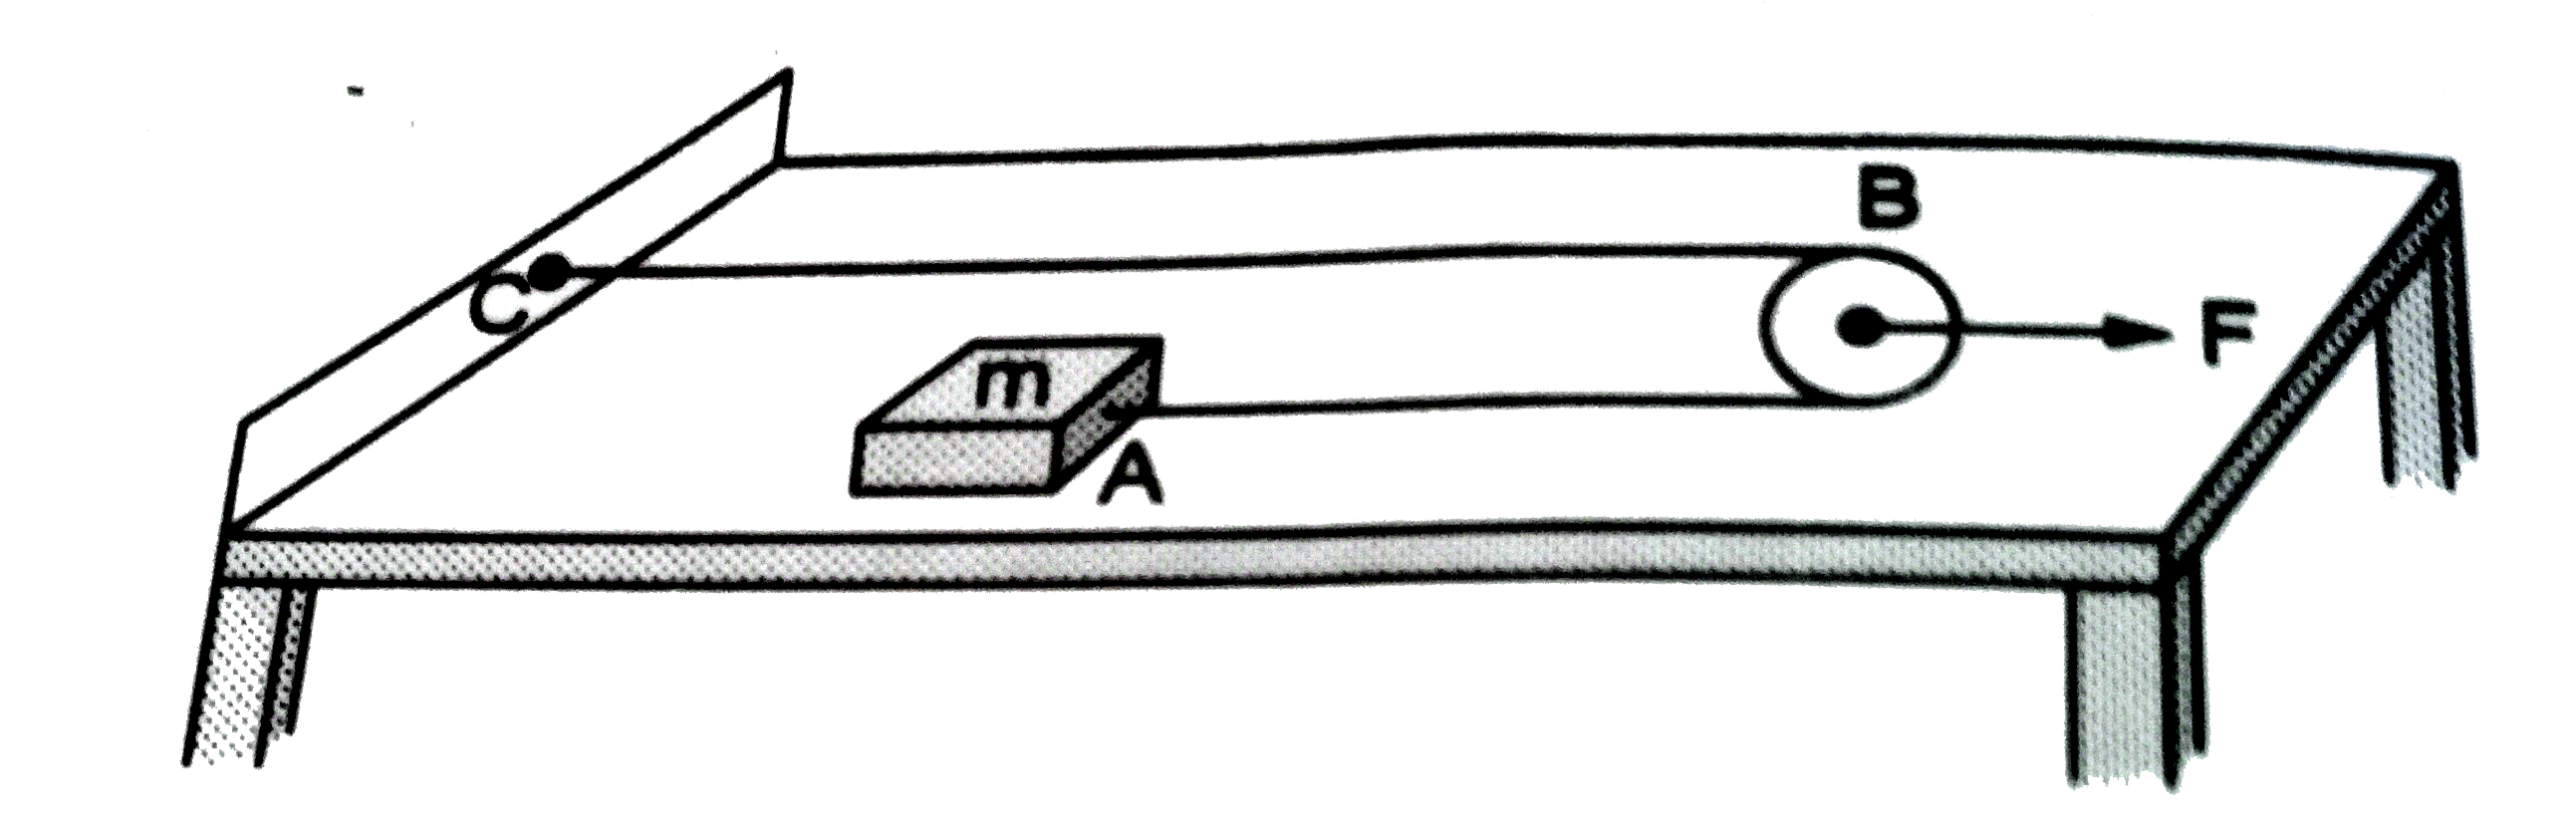 द्रव्यमान m वाले गुटके A को एक घर्षणरहित क्षैतिज टेबुल के बिंदु C से एक नगण्य भार वाली डोरी द्वारा जोड़कर रखा गया है | डोरी एक नगण्य भार वाली घर्षणरहित घिरनी B पर से जाती है जो डोरी के समानांतर दिशा में खींची जा सकती है |   (a) दिखाएँ की गुटके का त्वरण घिरनी के त्वरण का दोगुना होगा |   (b) घिरनी पर एक मनुष्य क्षैतिज दिशा में F बल लगा रहा है | गुटके का तथा घिरनी का त्वरण ज्ञात करें |